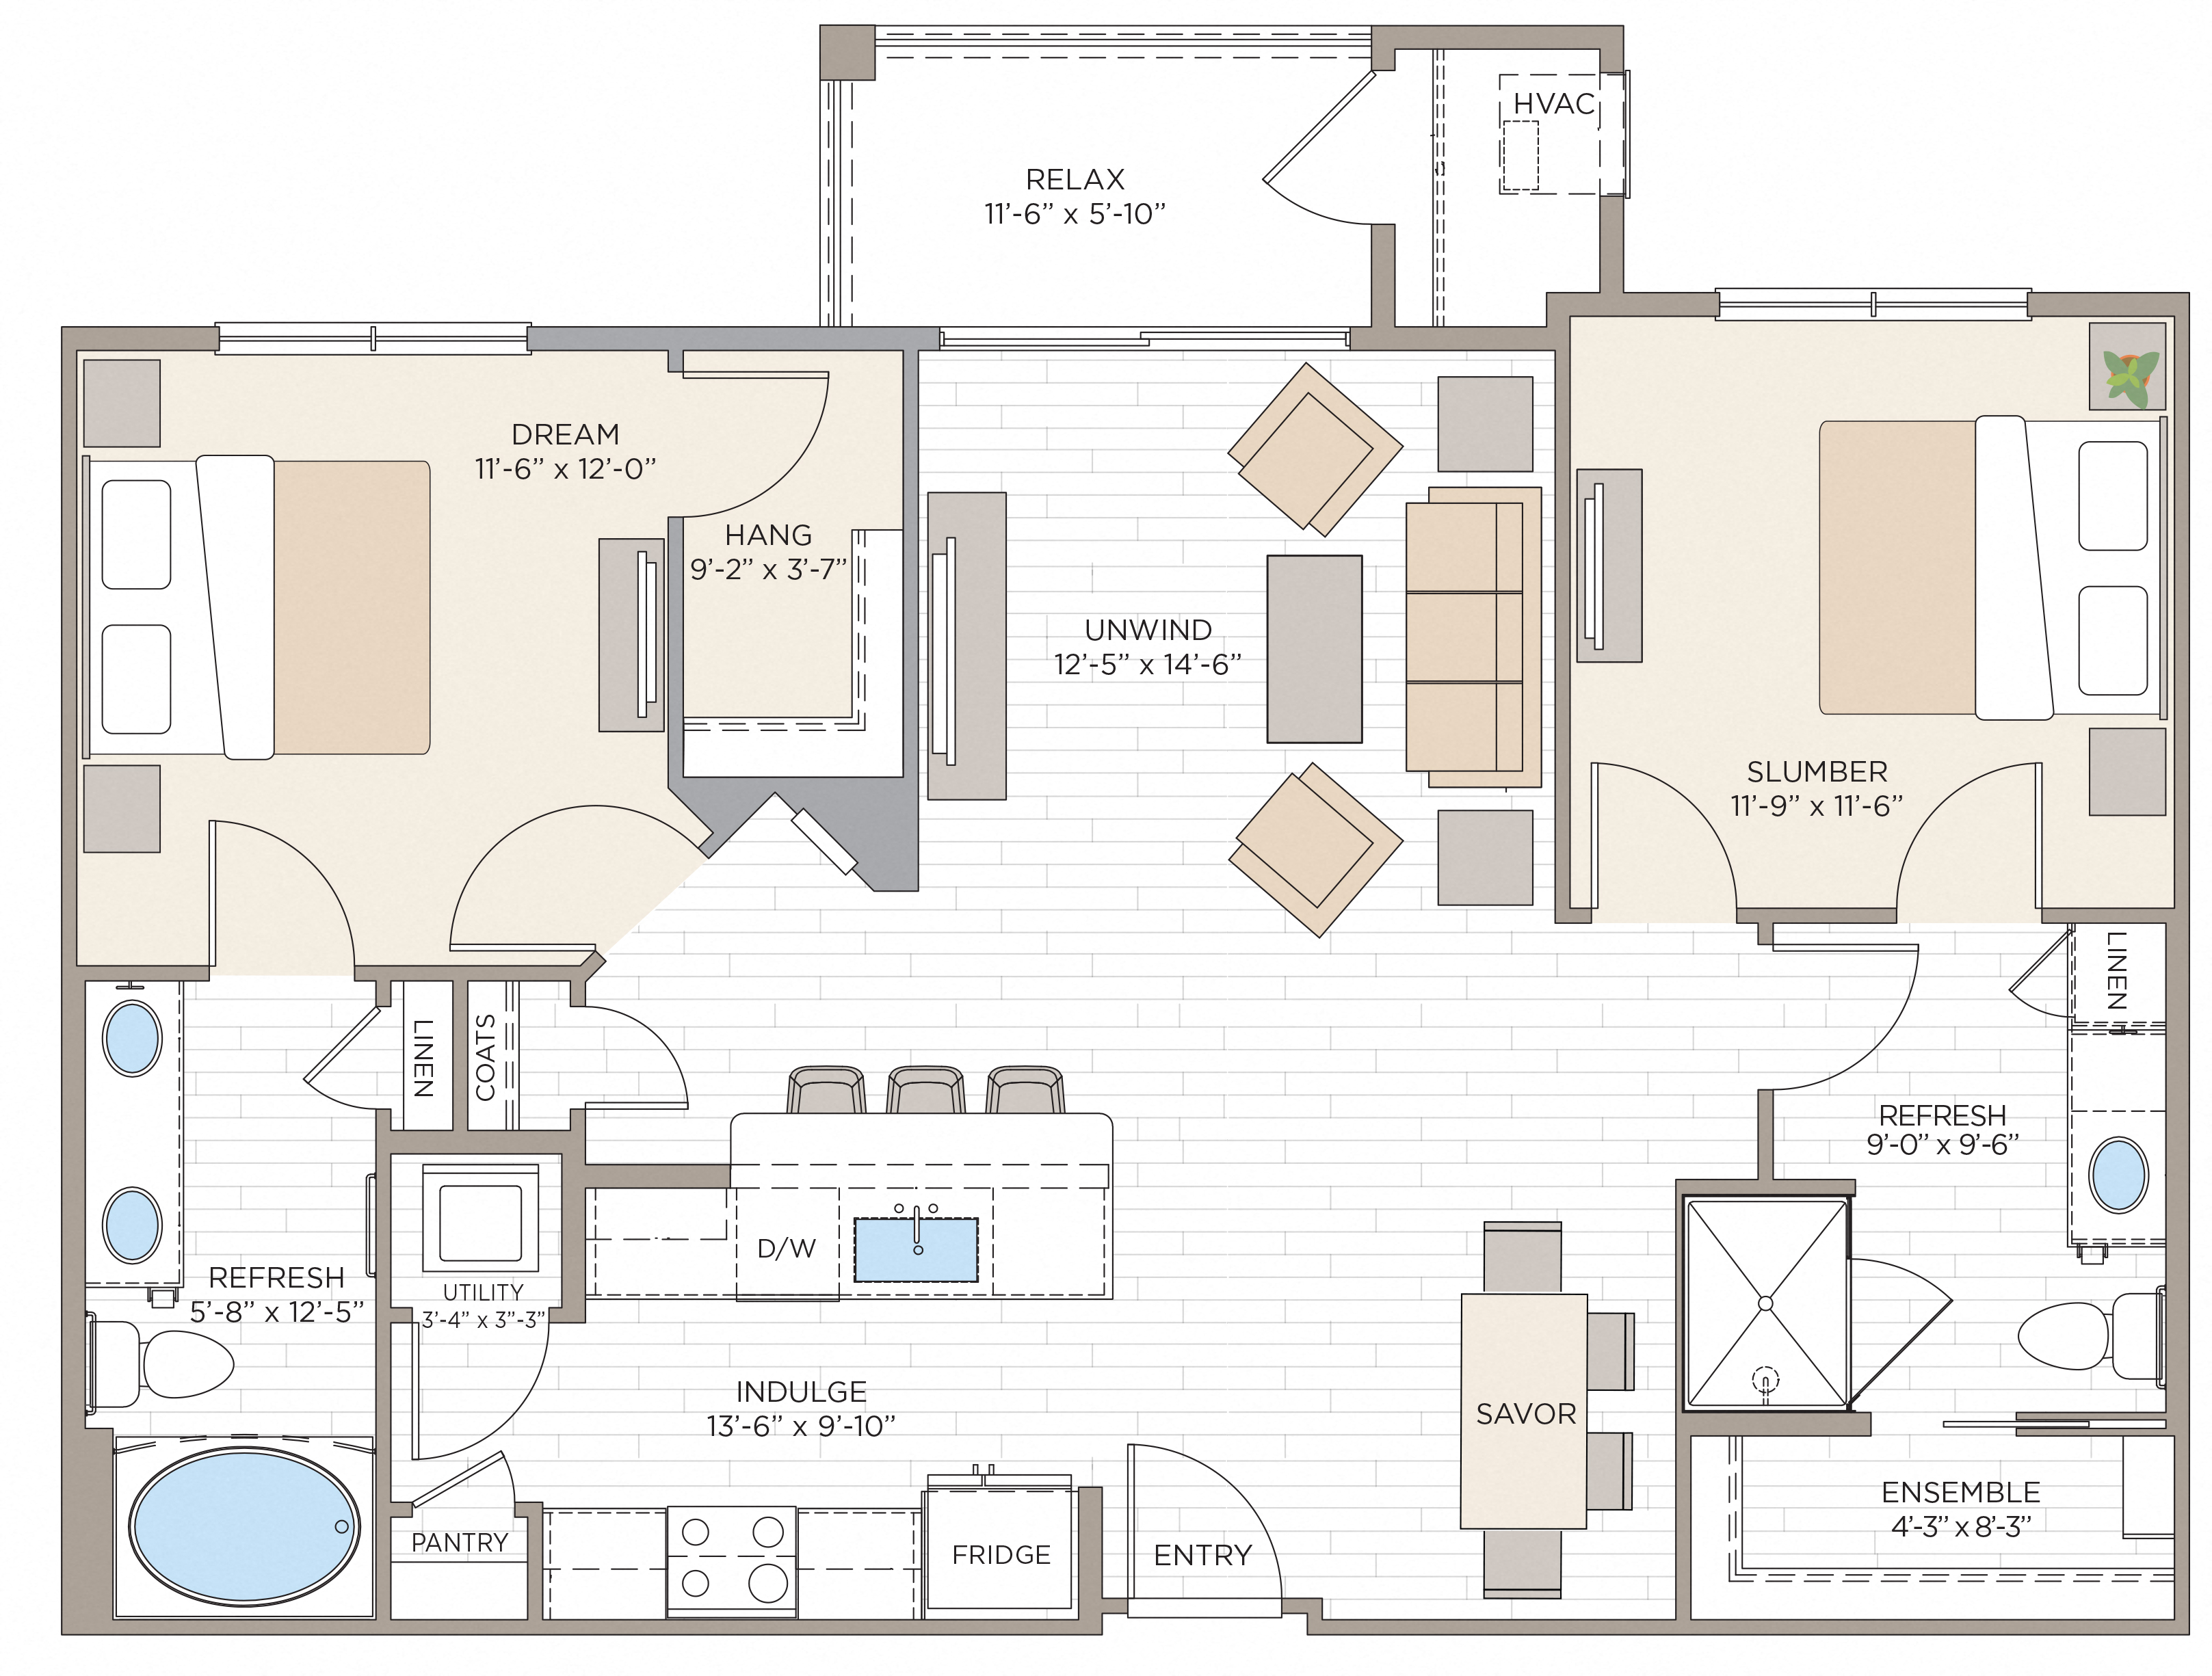 Floorplan for Apartment #10118, 2 bedroom unit at Halstead Maynard Crossing